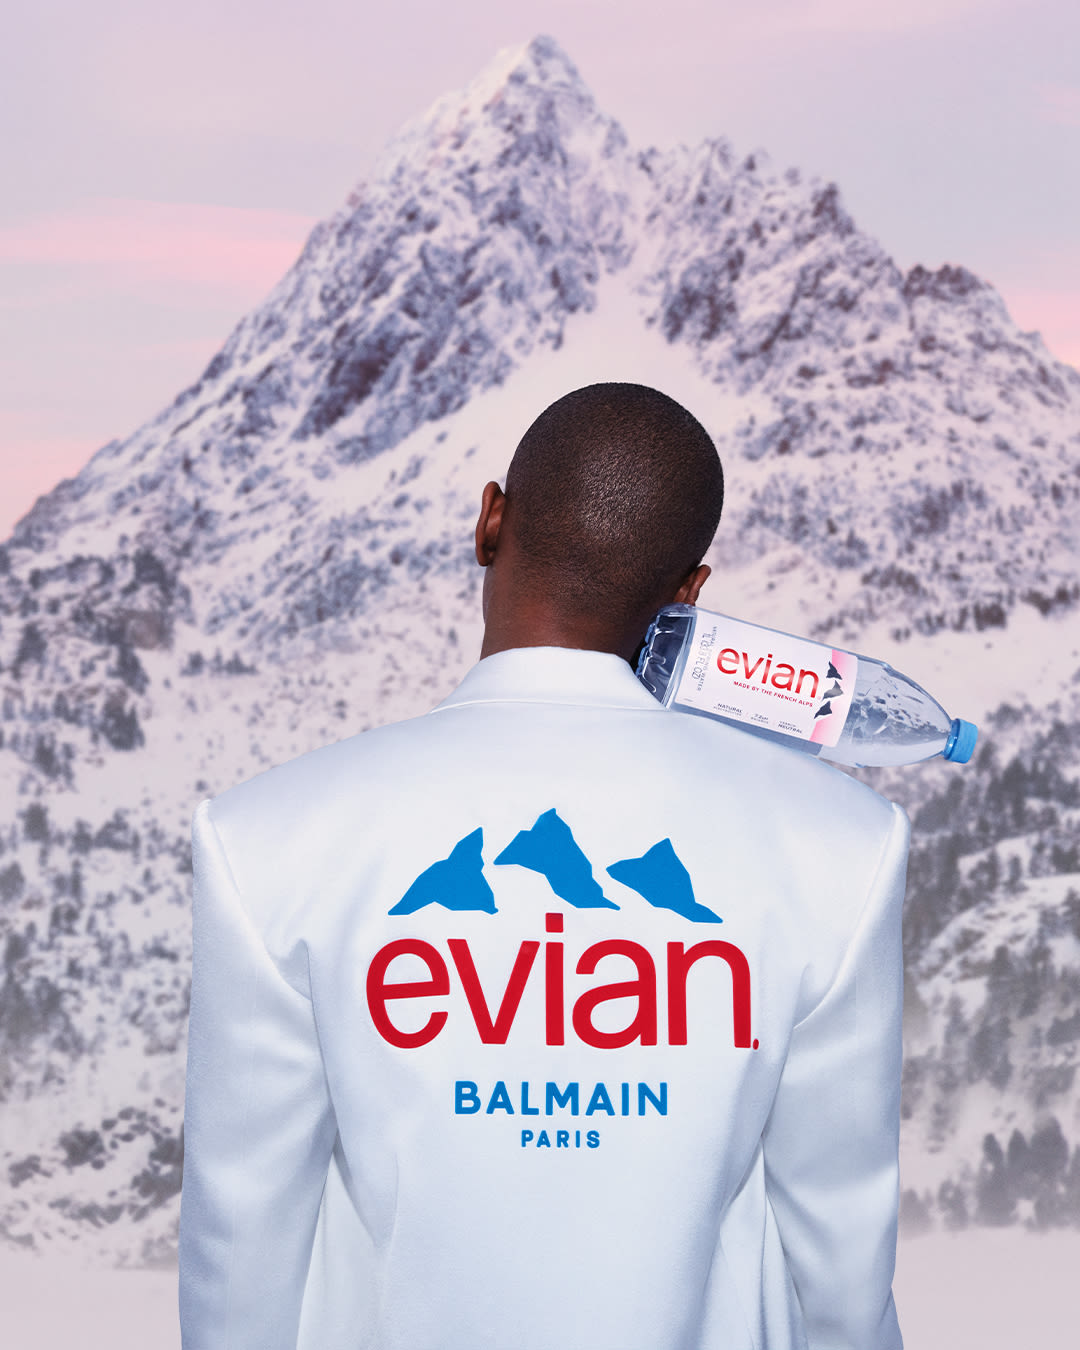 Evian-global-evian-x-balmain-Still-2-45